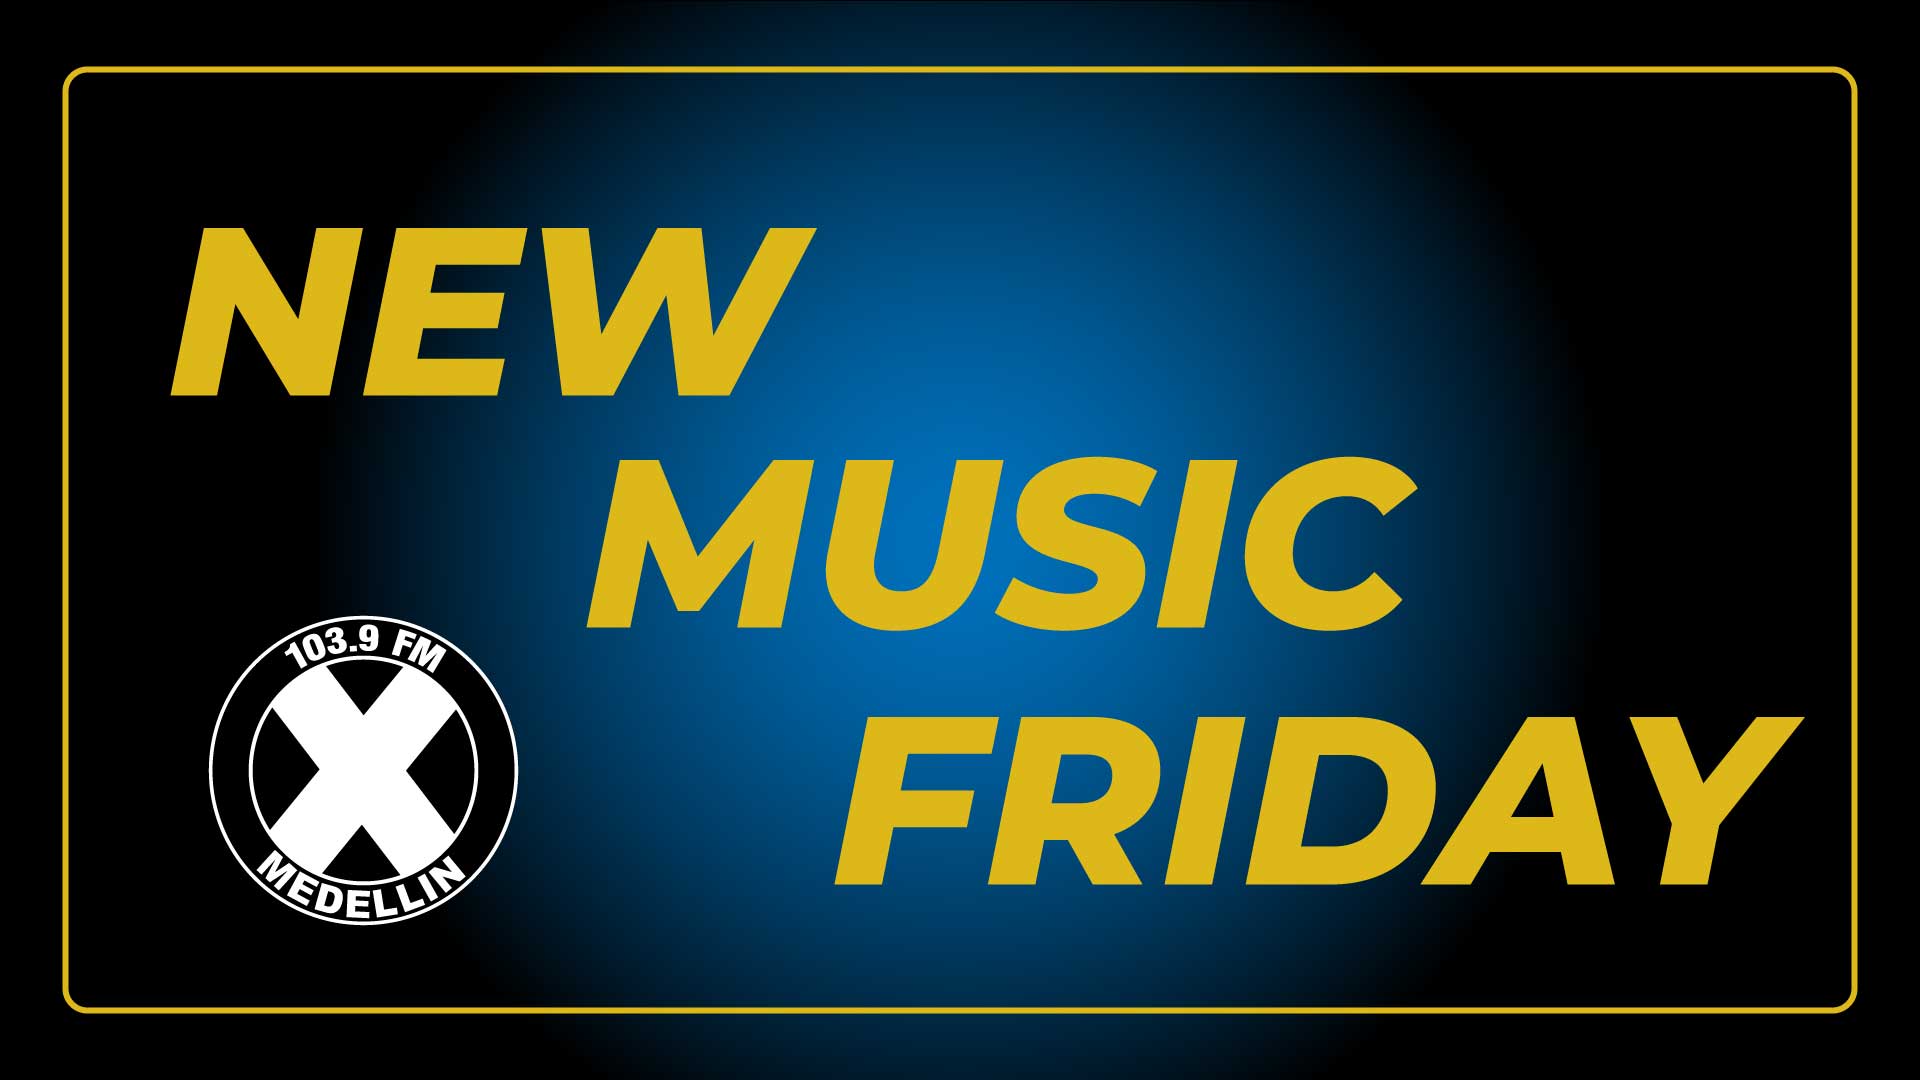 Descubre los lanzamientos musicales de este nuevo New House Music Friday